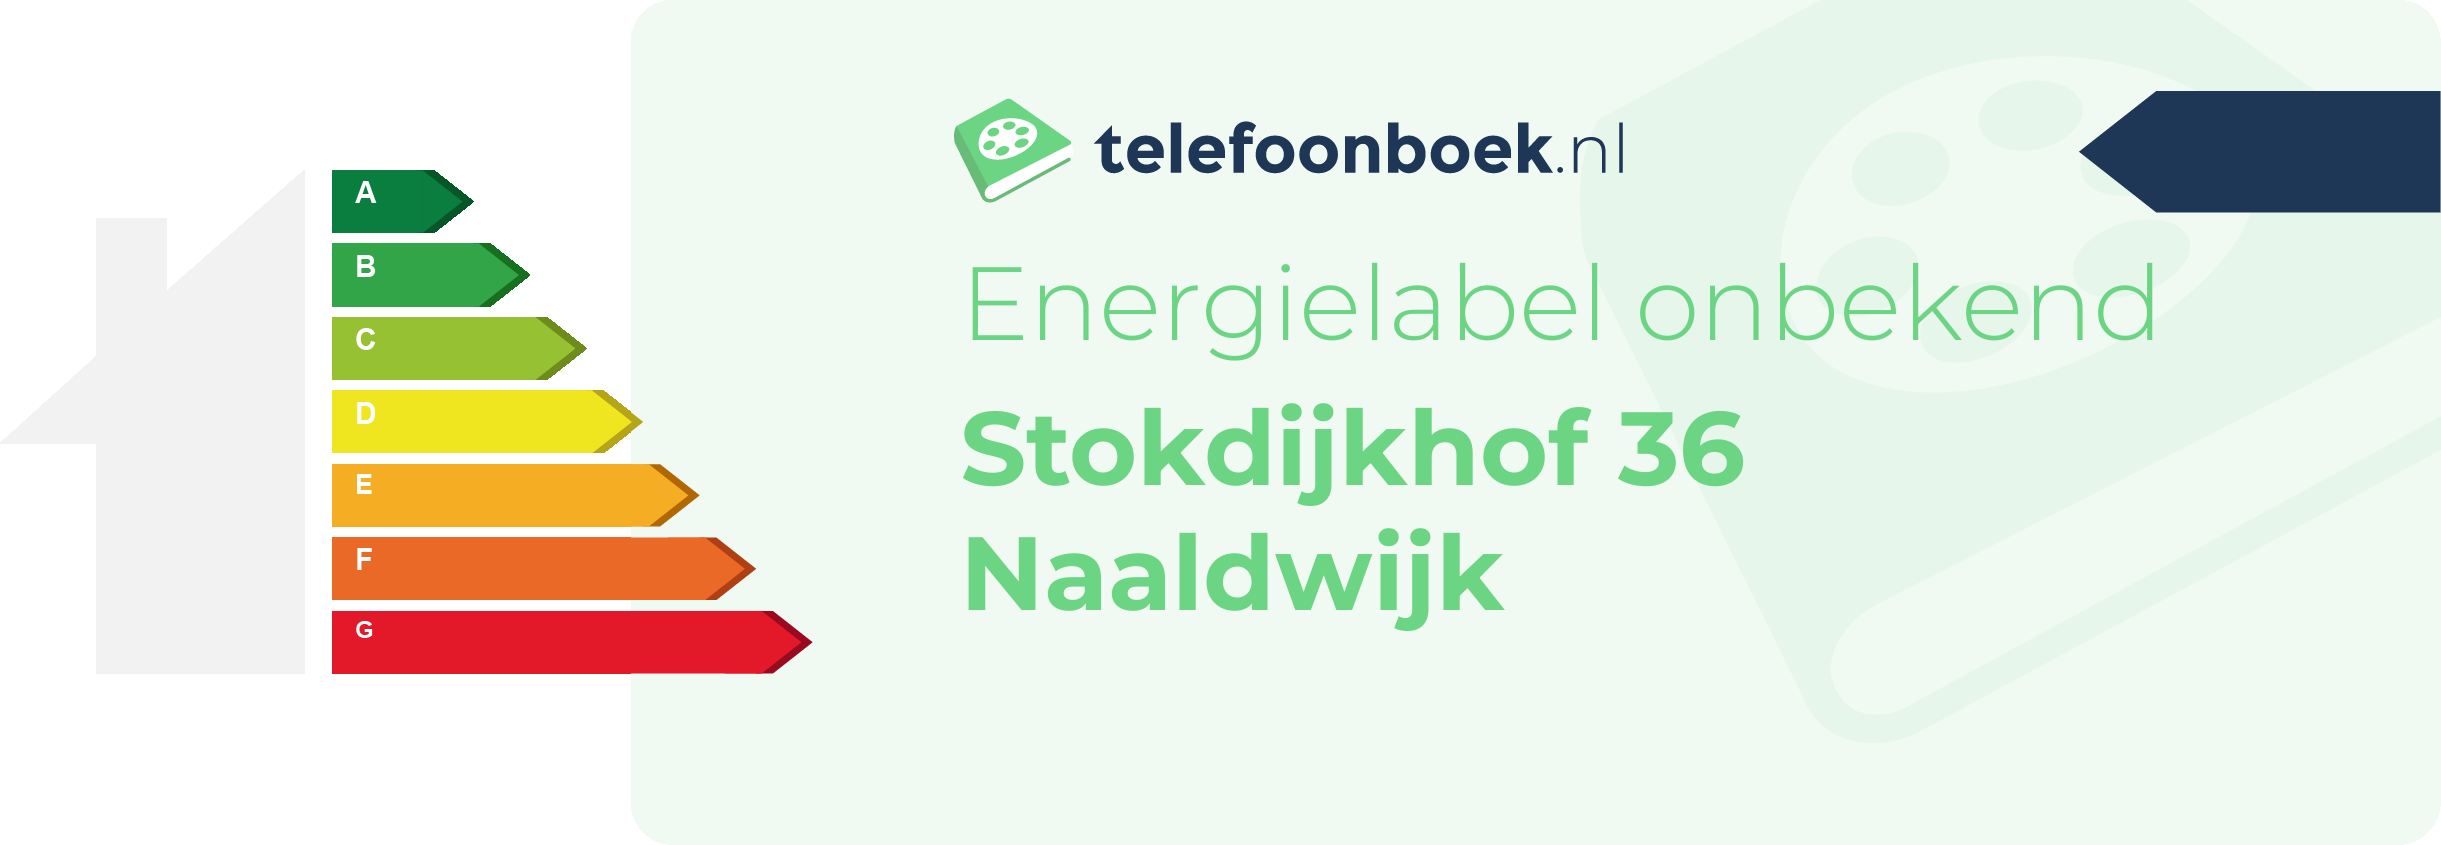 Energielabel Stokdijkhof 36 Naaldwijk